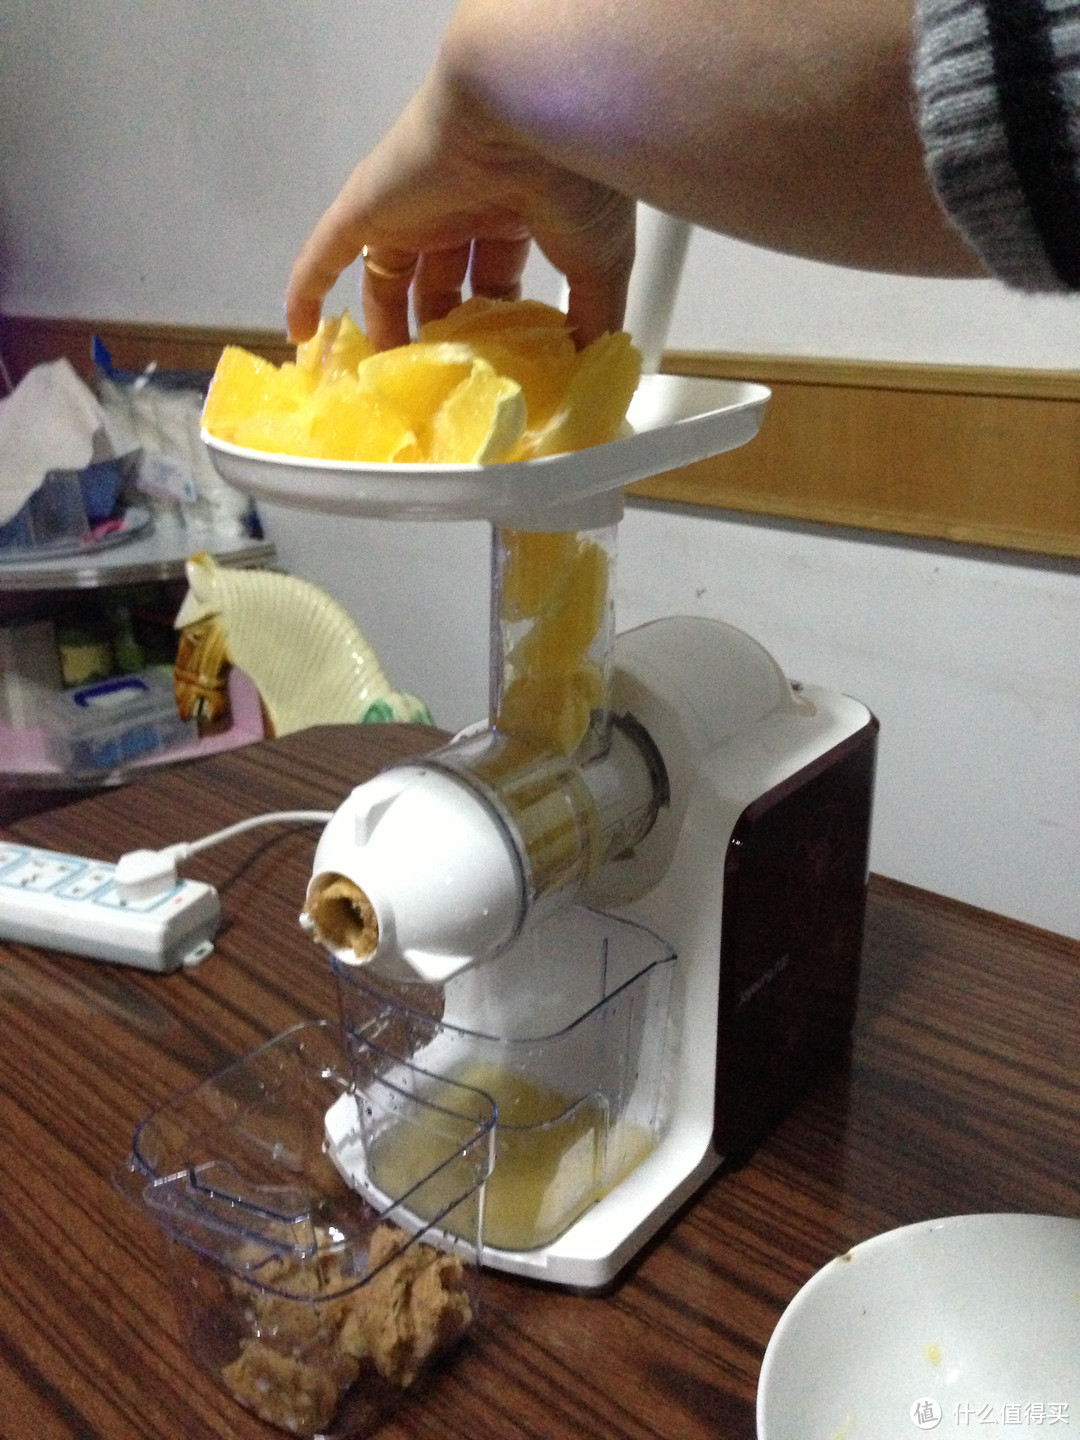 亚马逊神价 Joyoung 九阳 JYZ-E7 低速螺旋挤压式榨汁机 使用小计